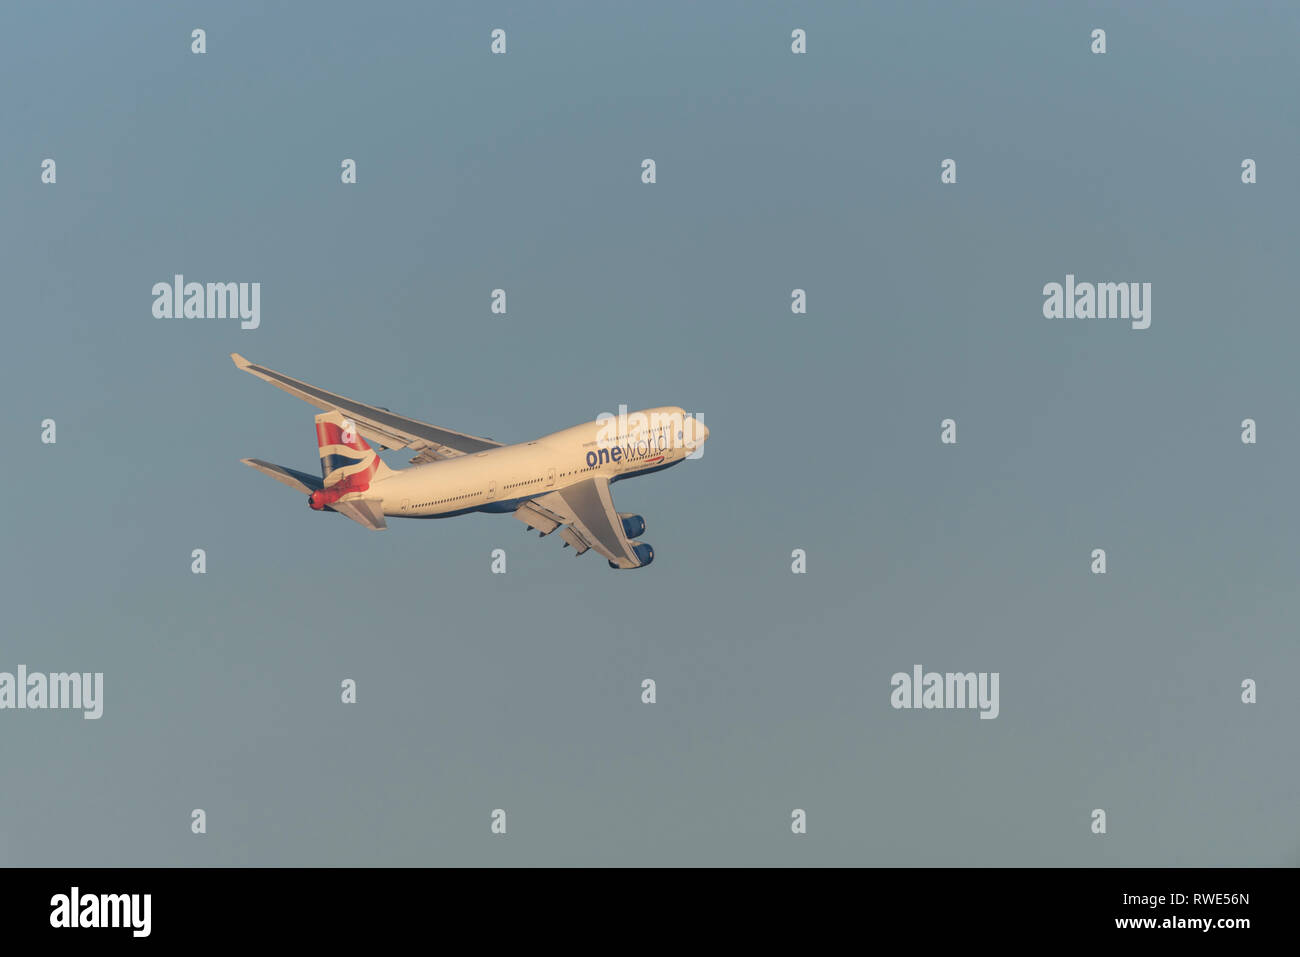 British Airways Boeing 747 Jumbo Jet aereo di linea decolla dall'aeroporto di Londra Heathrow, Regno Unito, in cielo blu Foto Stock